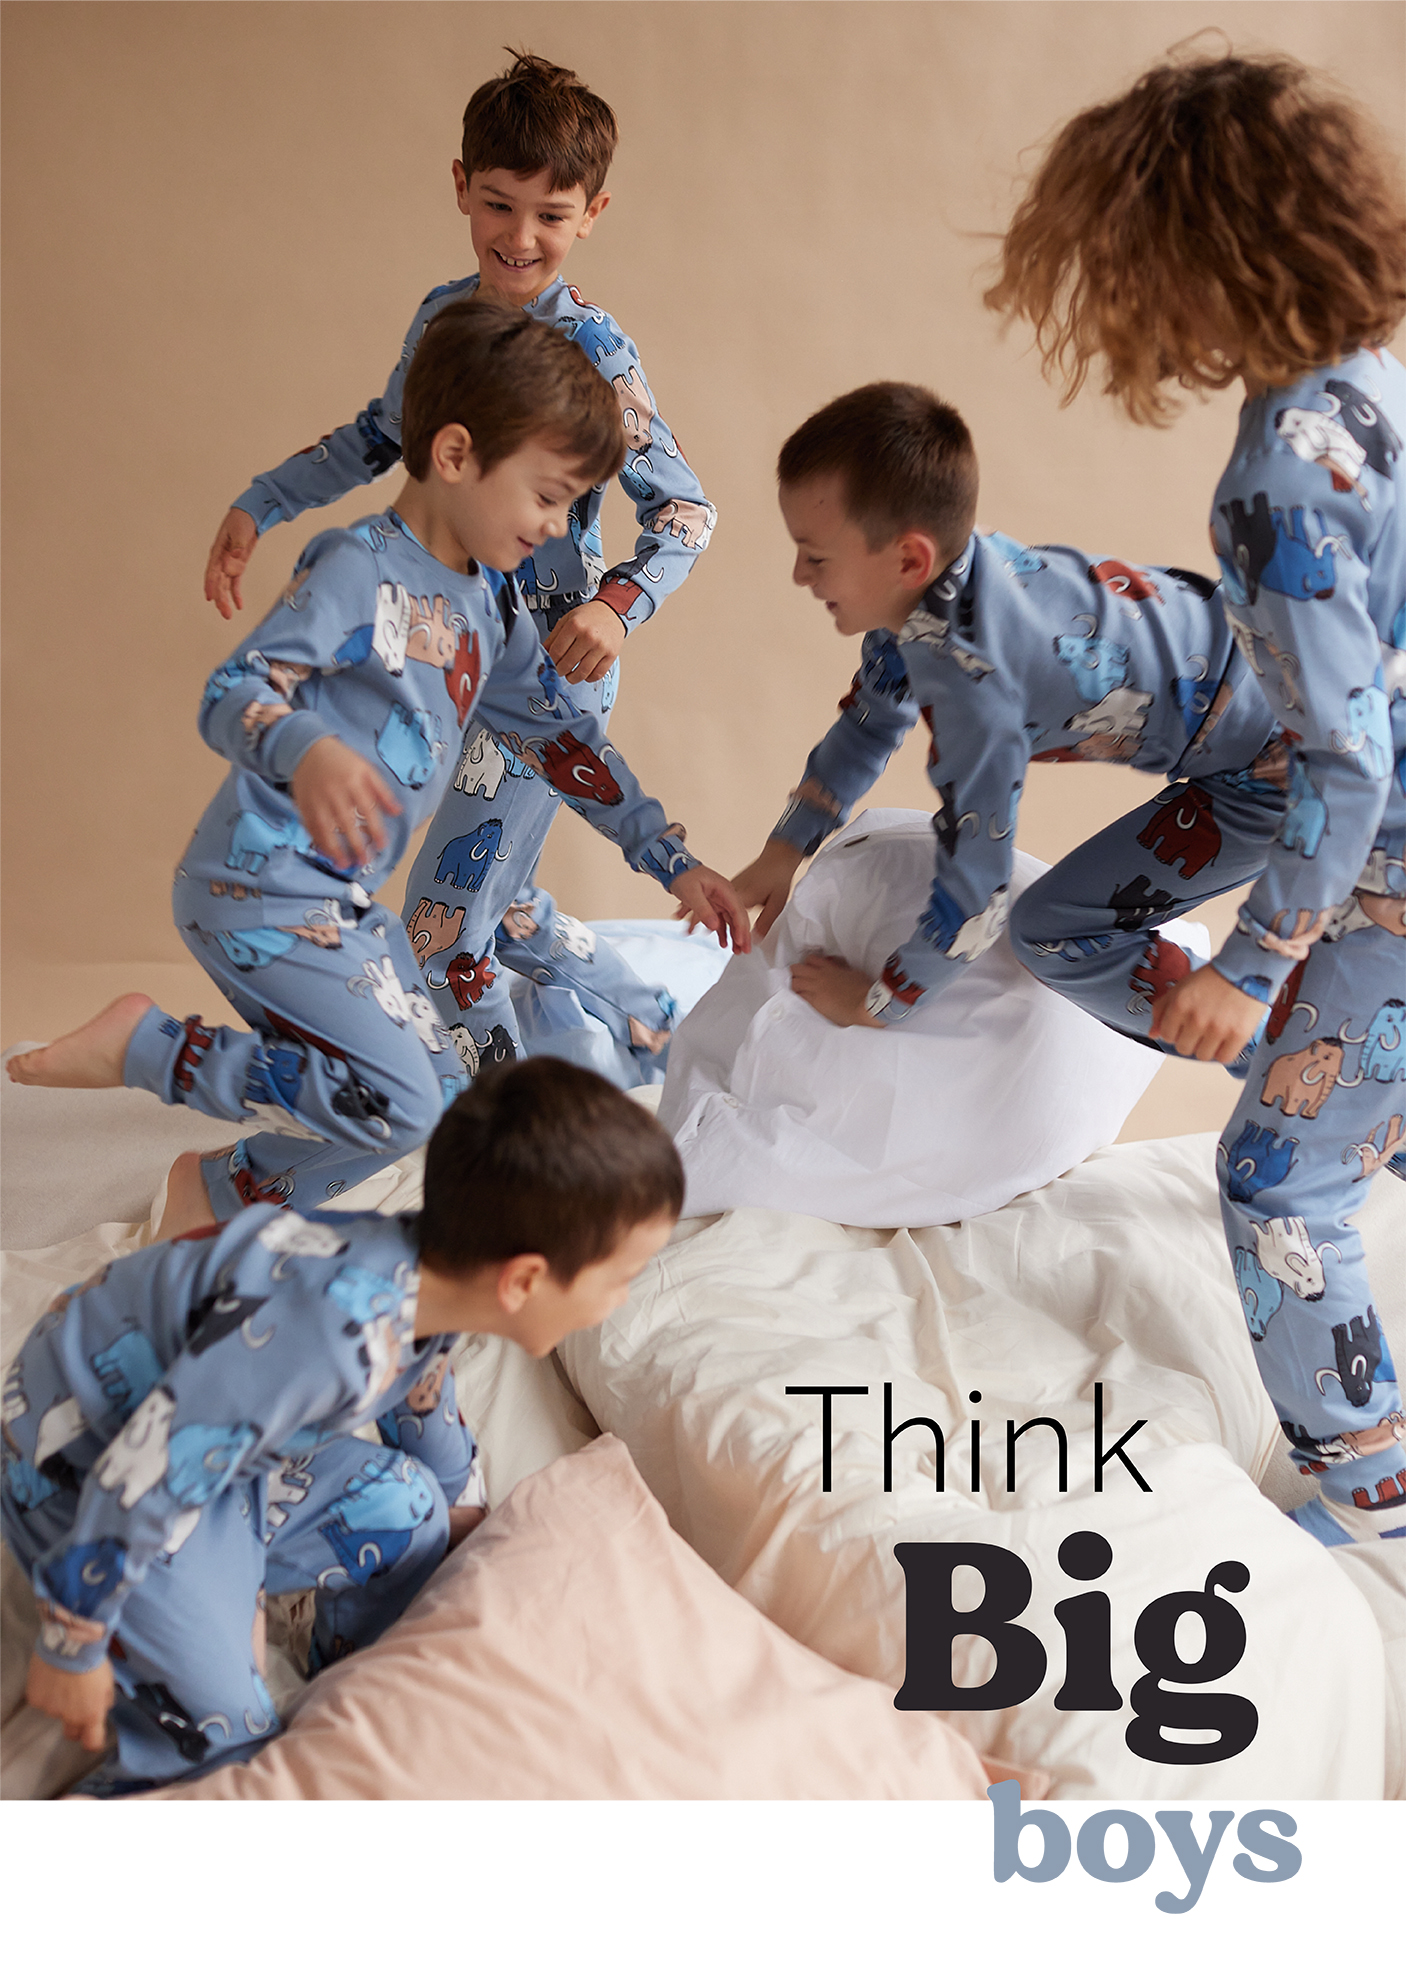 Pet dečaka u plavim pidžamama na dug rukav sa motivom slonova trči po krevetu